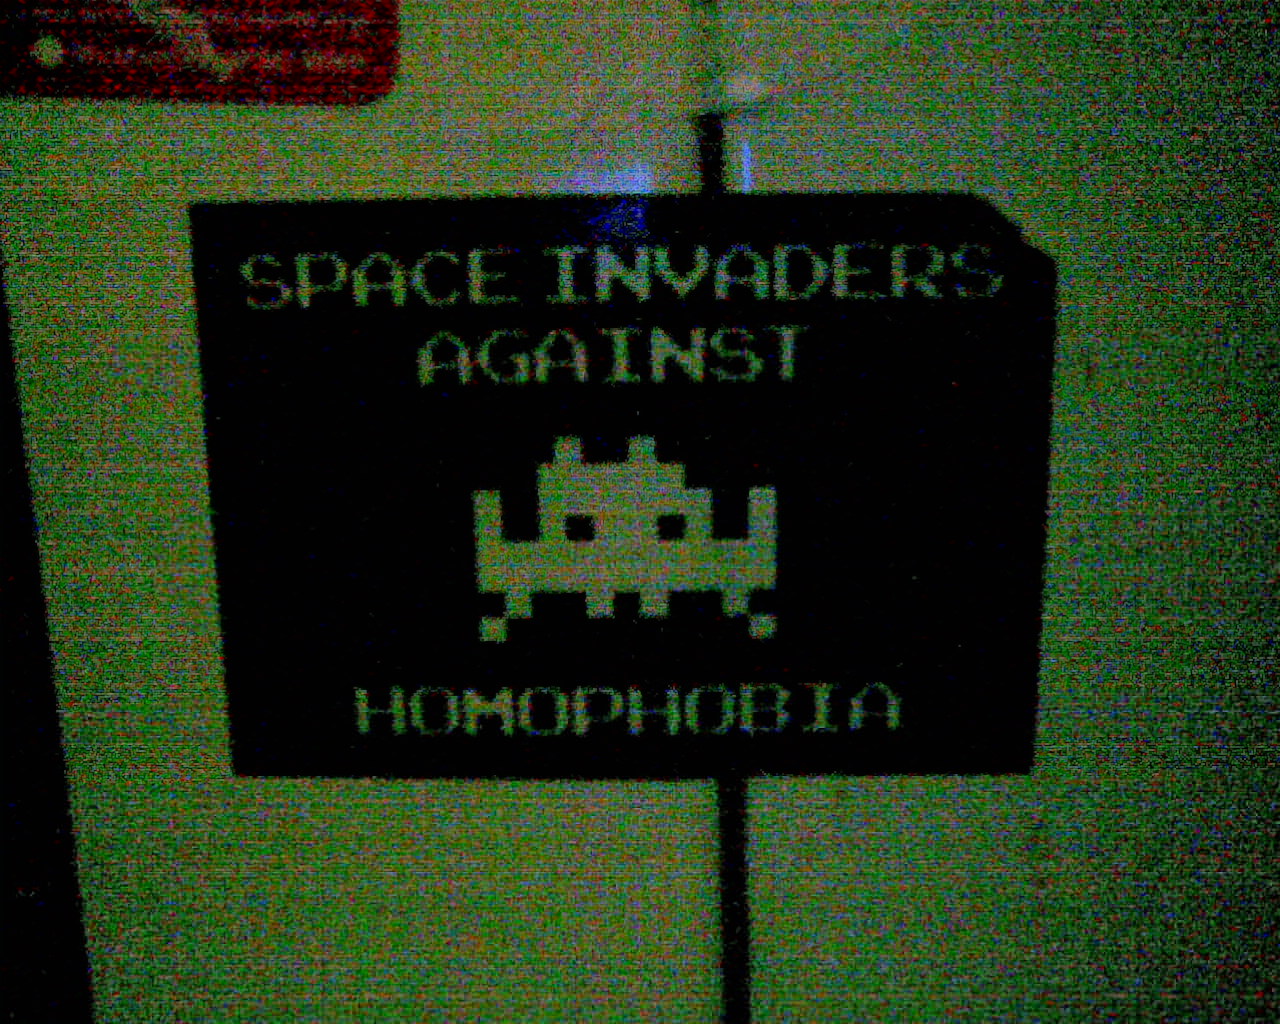 [invaders_against_homophobia.jpg]